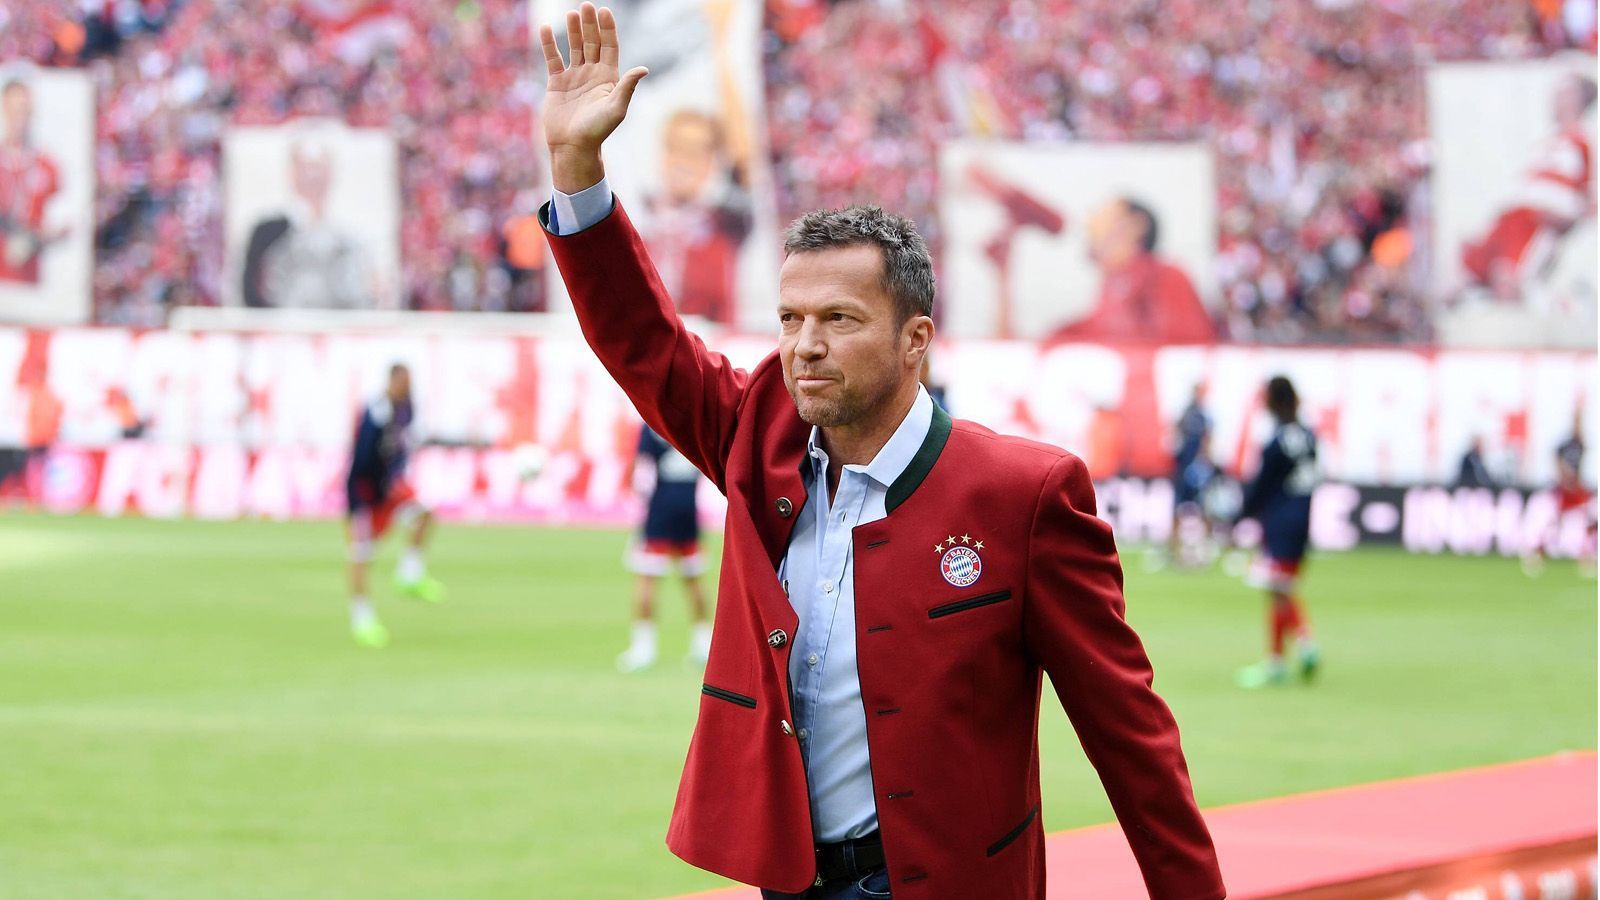 
                <strong>Lothar Matthäus</strong><br>
                Position: Zentrales Mittelfeld, LiberoUmgerechneter Marktwert: 130 Millionen EuroBeim FC Bayern aktiv: Von 1984 bis 1988 und von 1992 bis 2000Bewertete Saison: 1987/88 (26 Jahre)
              